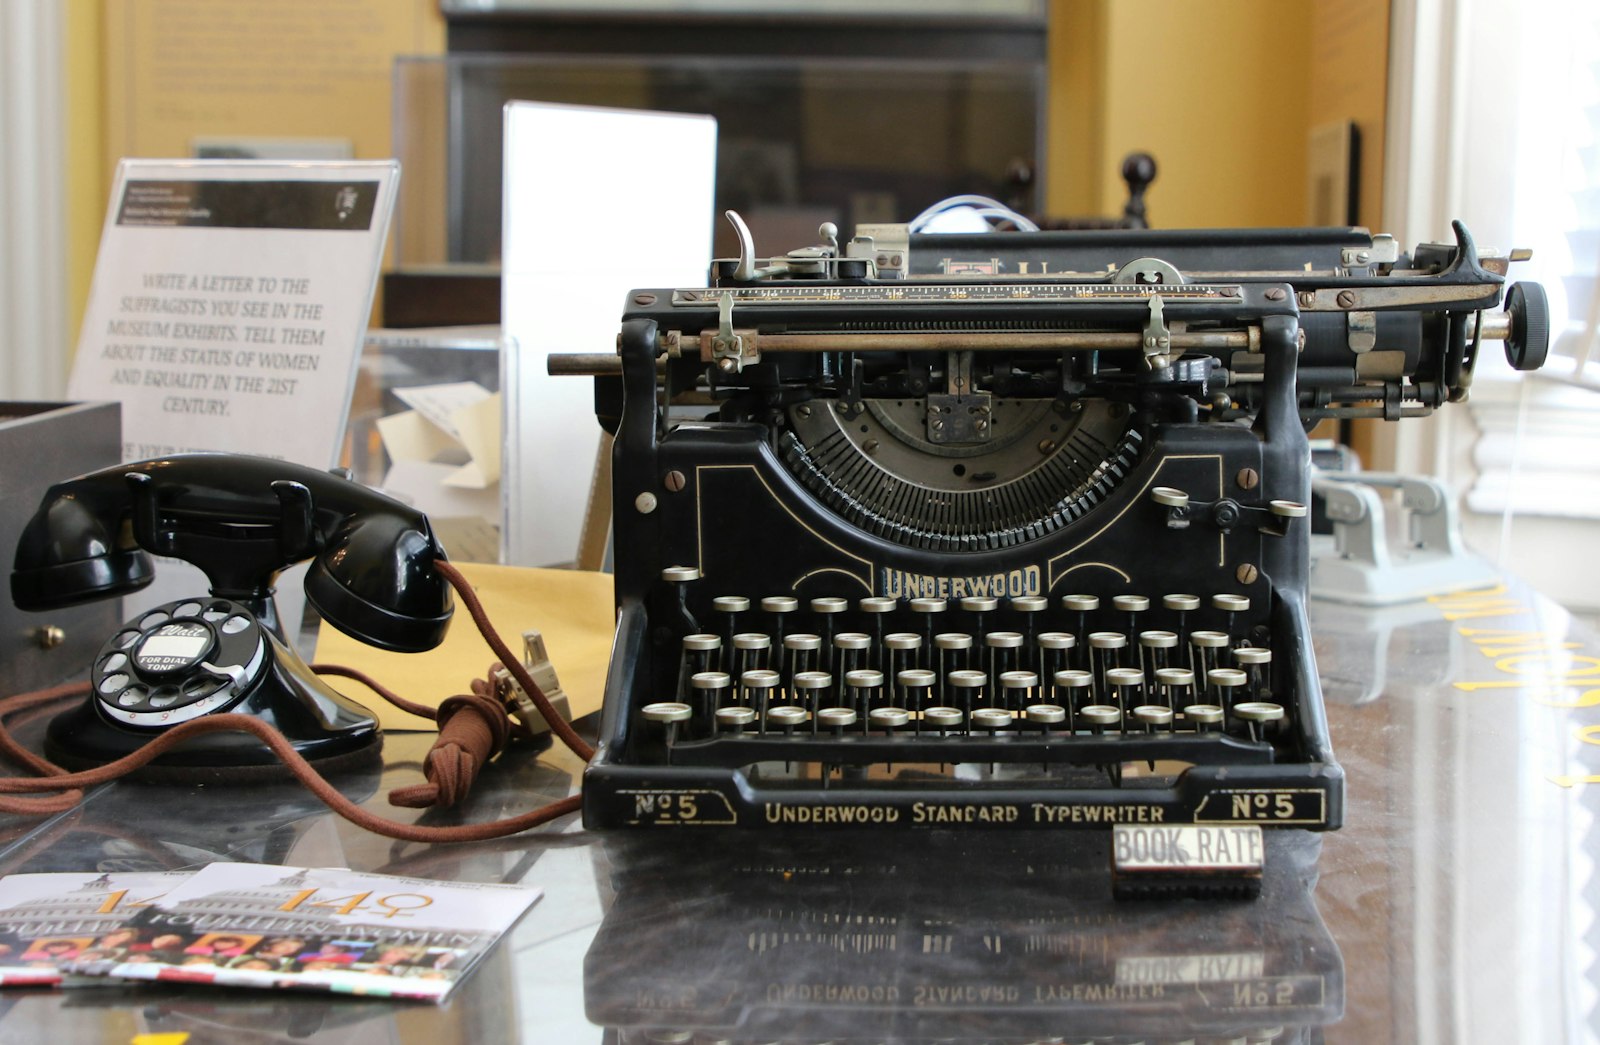 Typewriter and rotary phone